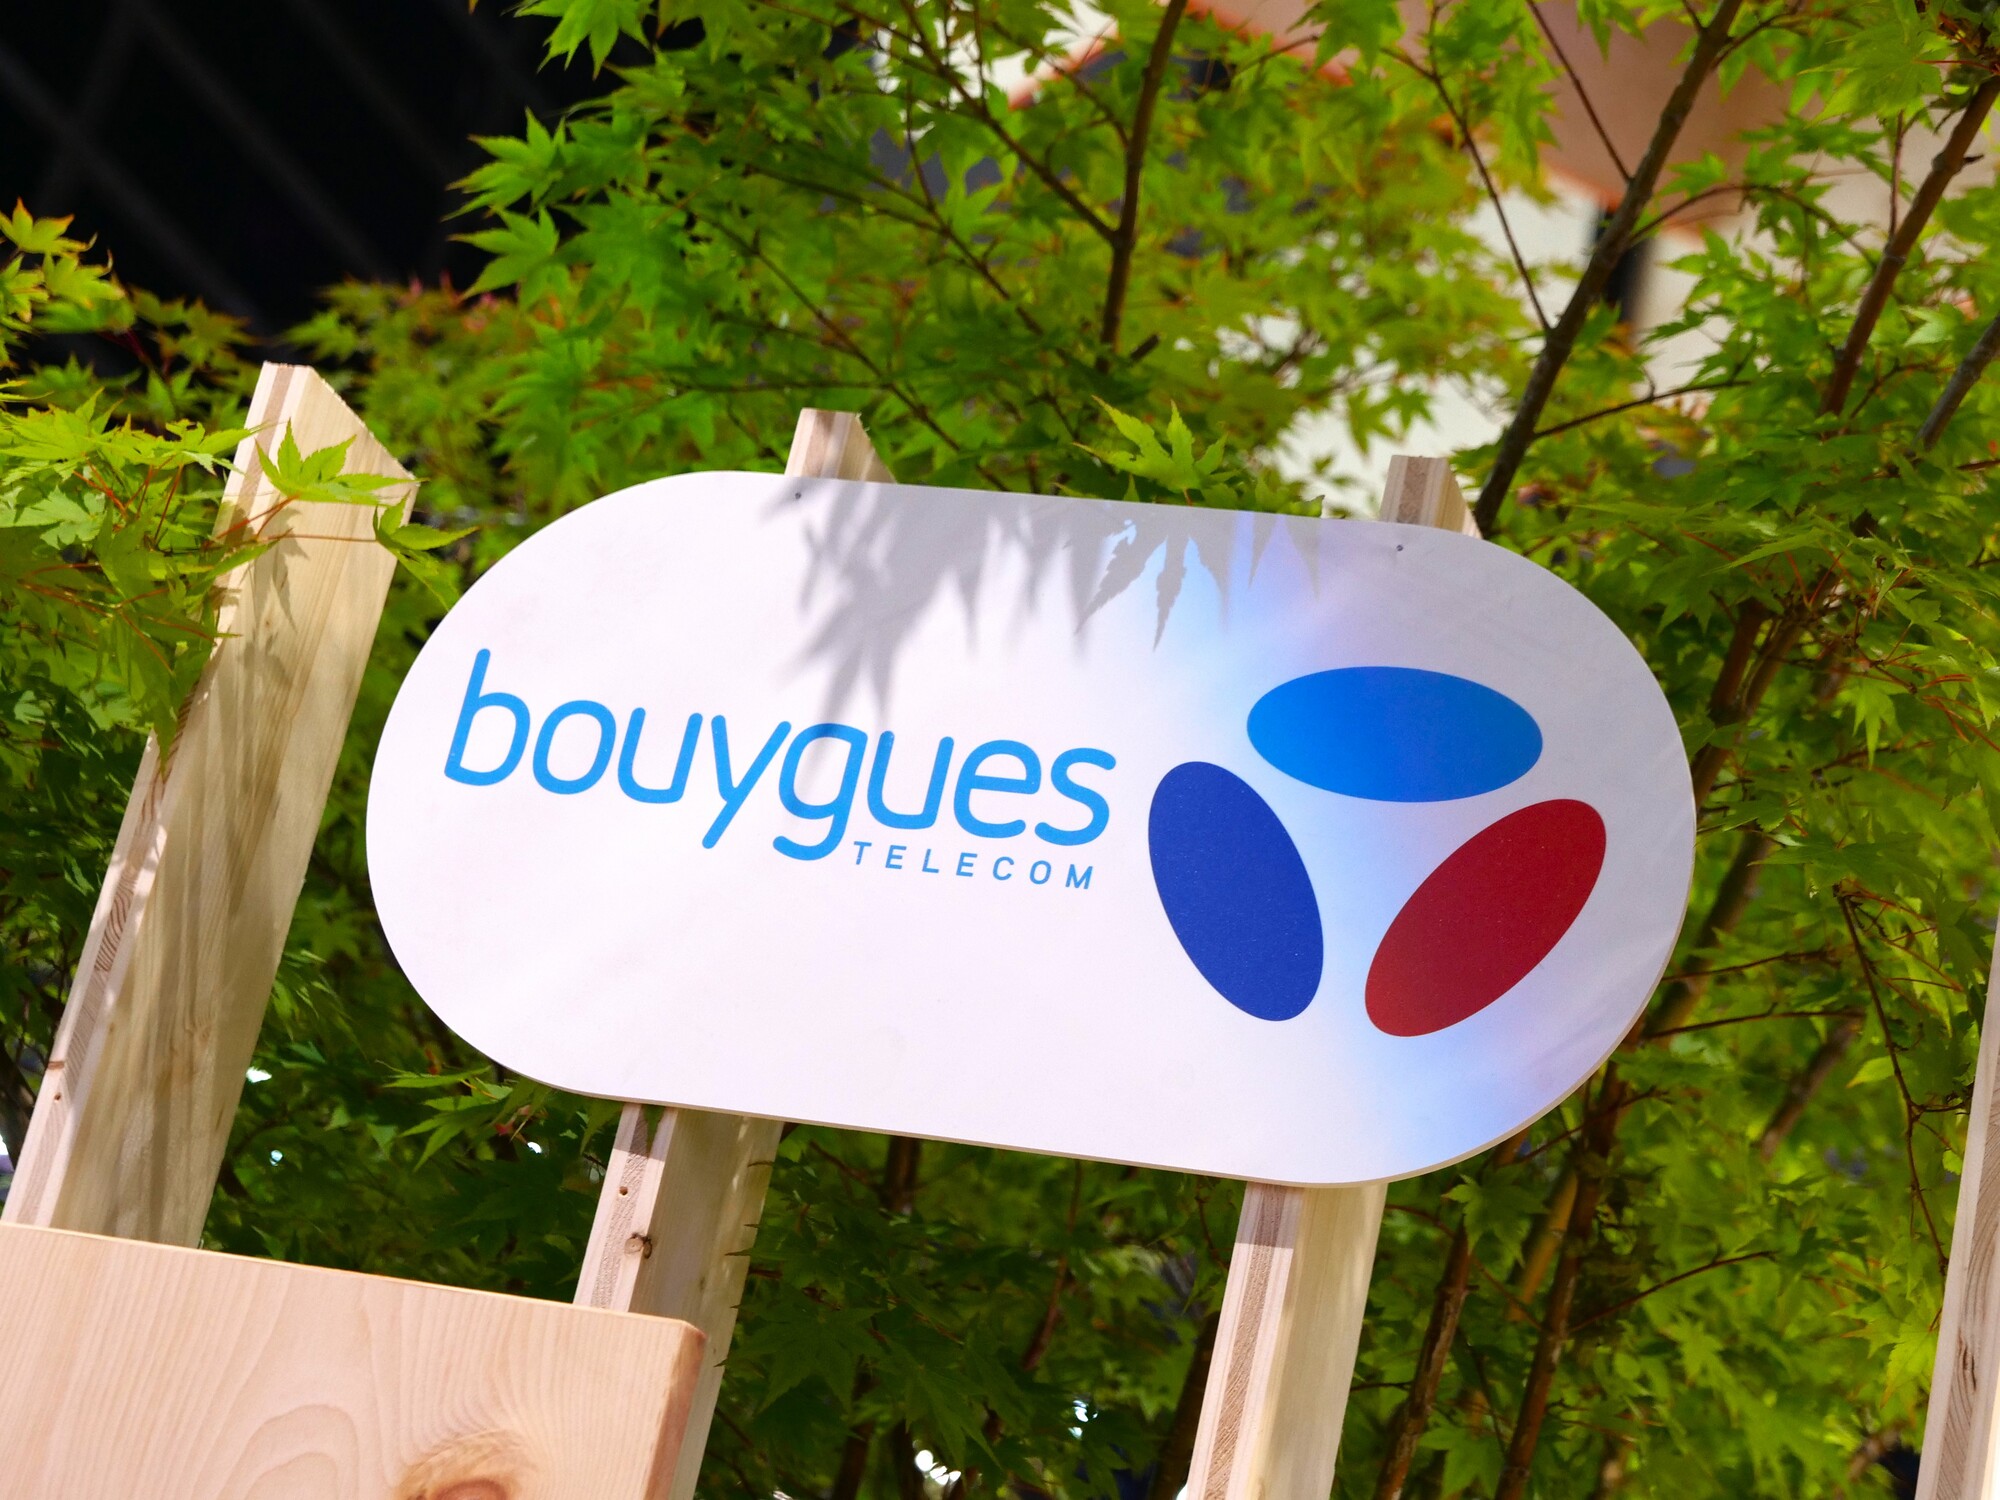 Le gros coup de Bouygues Telecom, qui rembourse trois mois d'abonnement sur ses offres internet Bbox